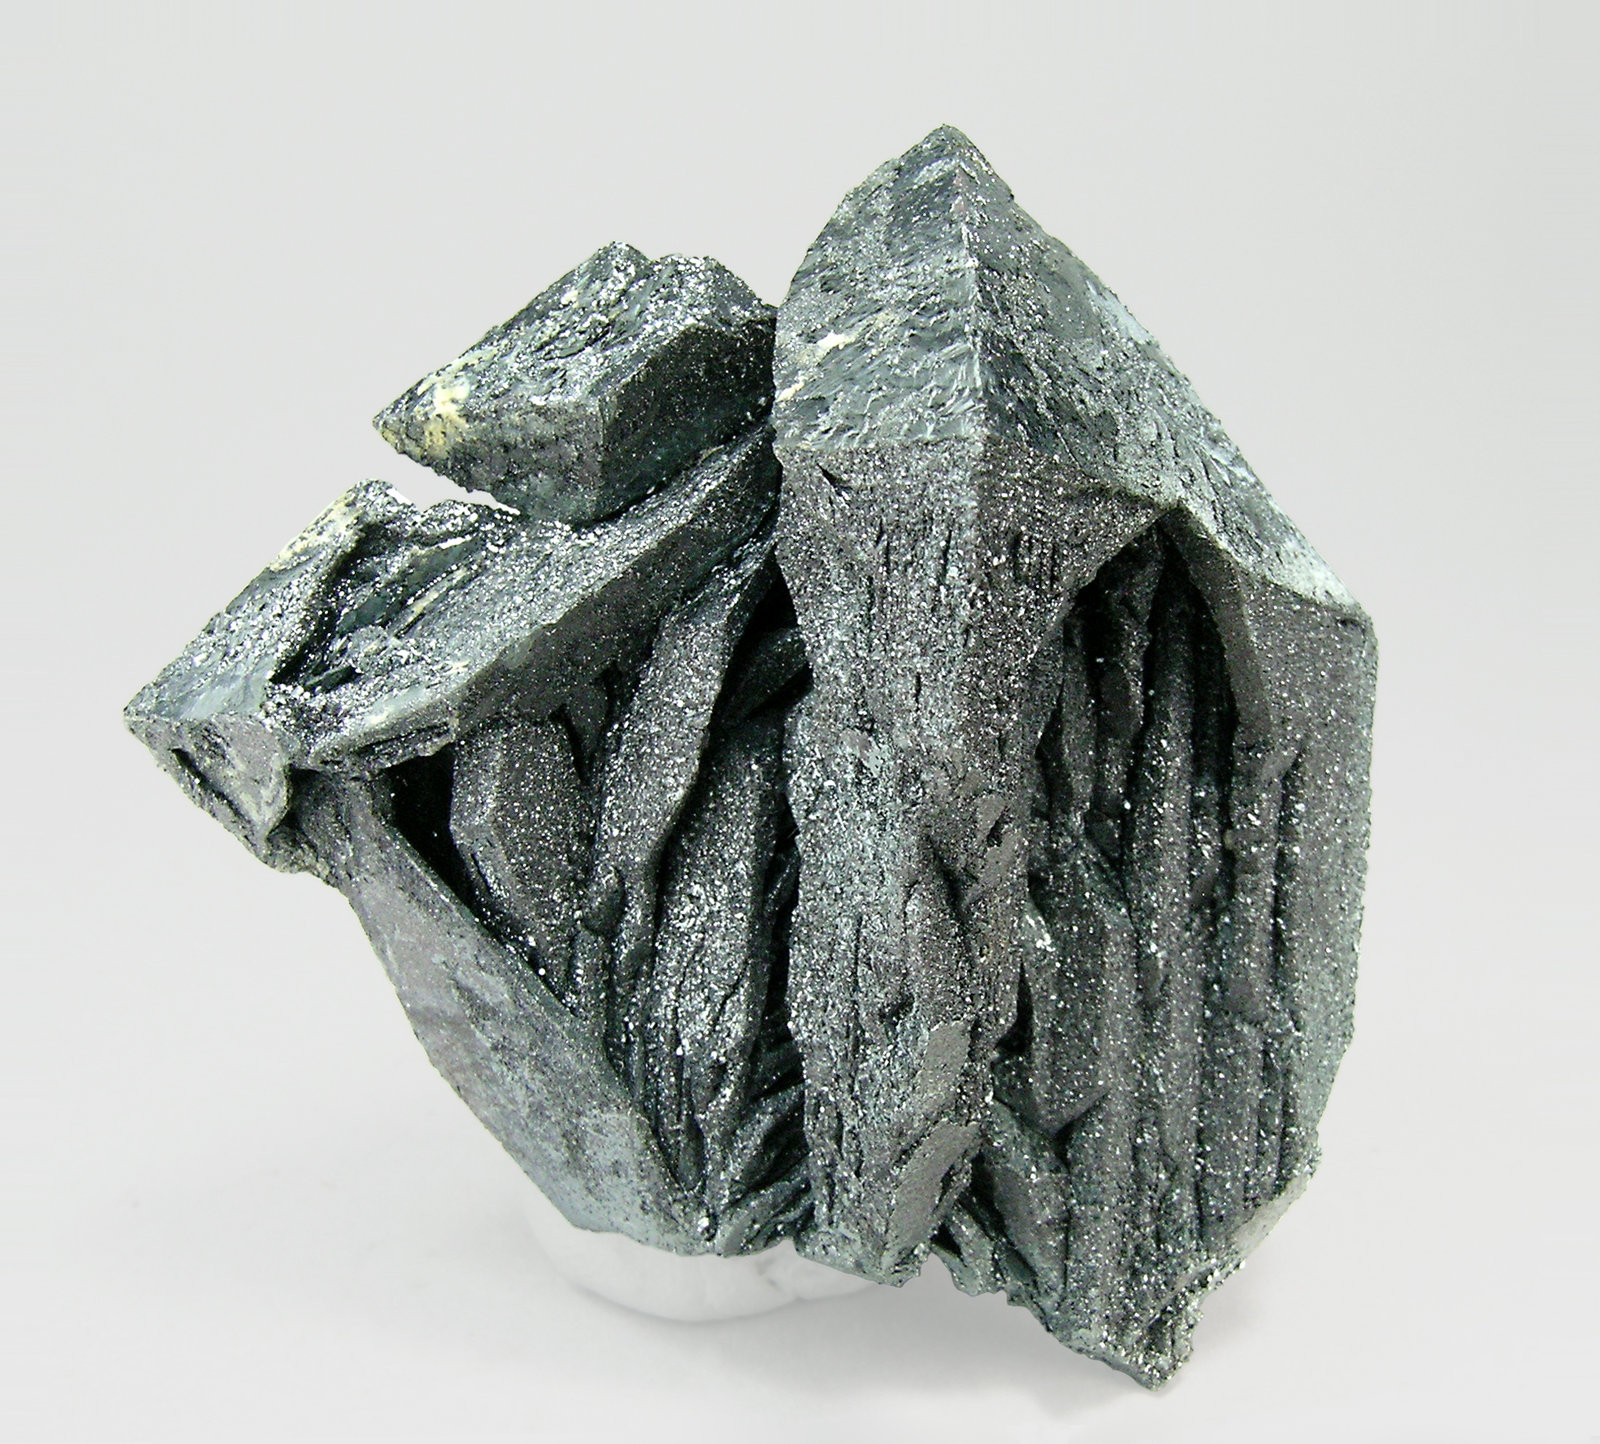 specimens/s_imagesQ4/Hematite-TG14Q4r.jpg